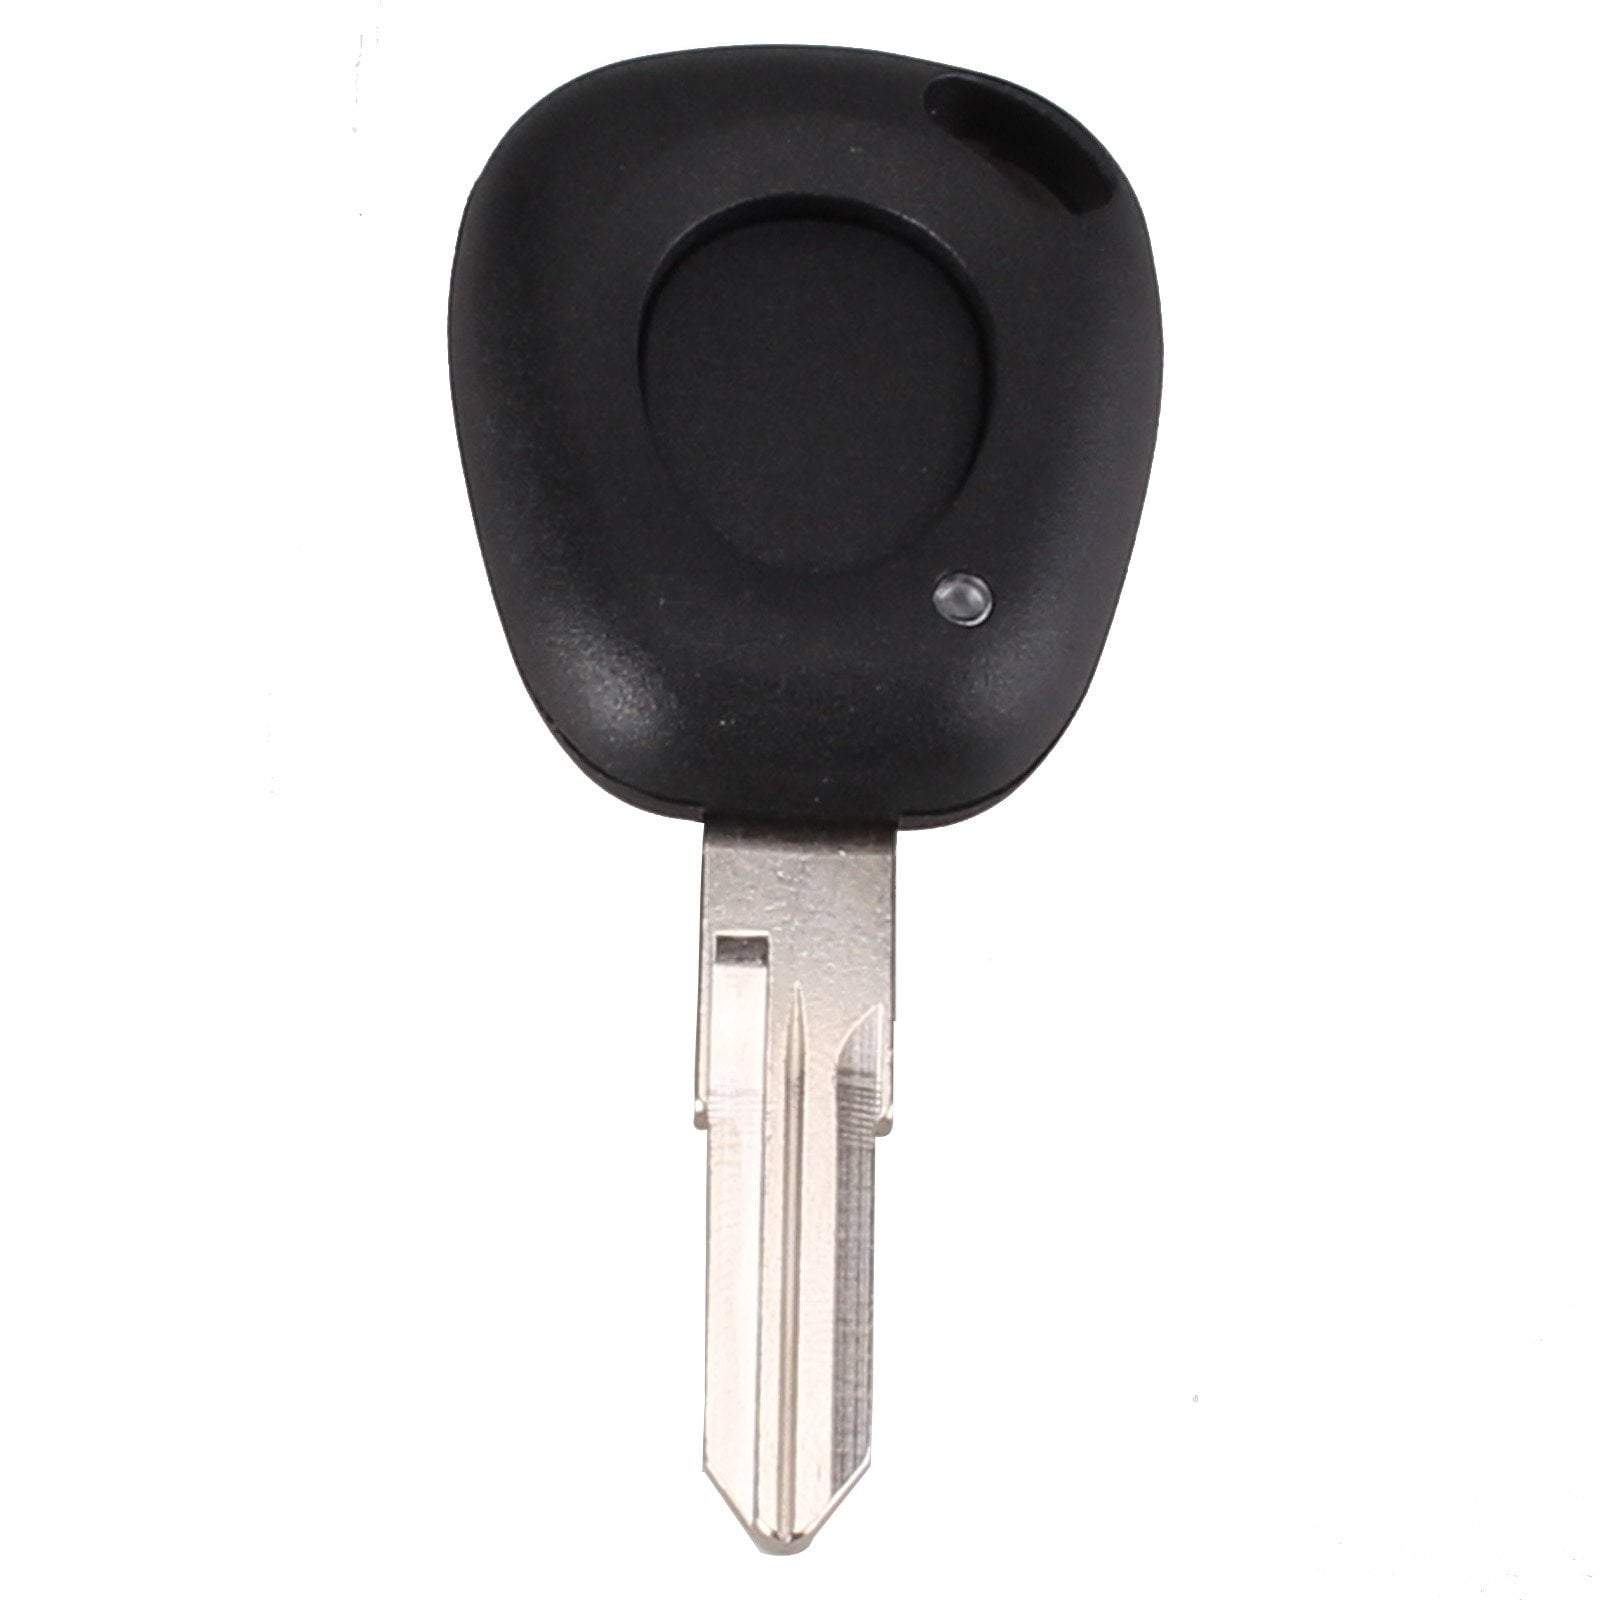 Fekete színű, 1 gombos Renault kulcs, kulcsház.